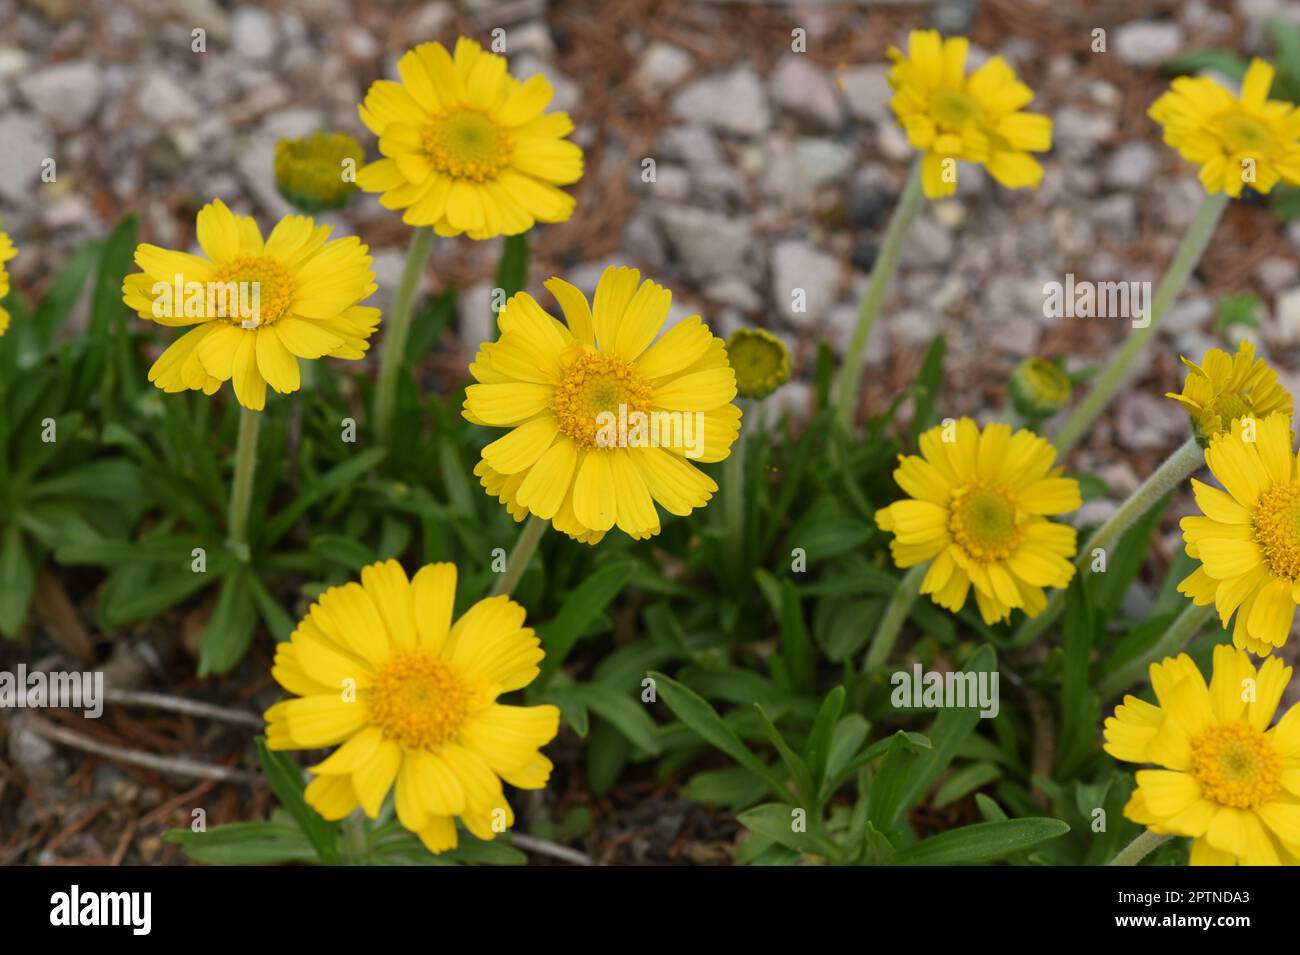 Tetraneuris acaulis ist eine nordamerikanische Bluetenpflanzenart aus der Familie der Sonnenblumen. Tetraneuris acaulis is a North American species of Stock Photo